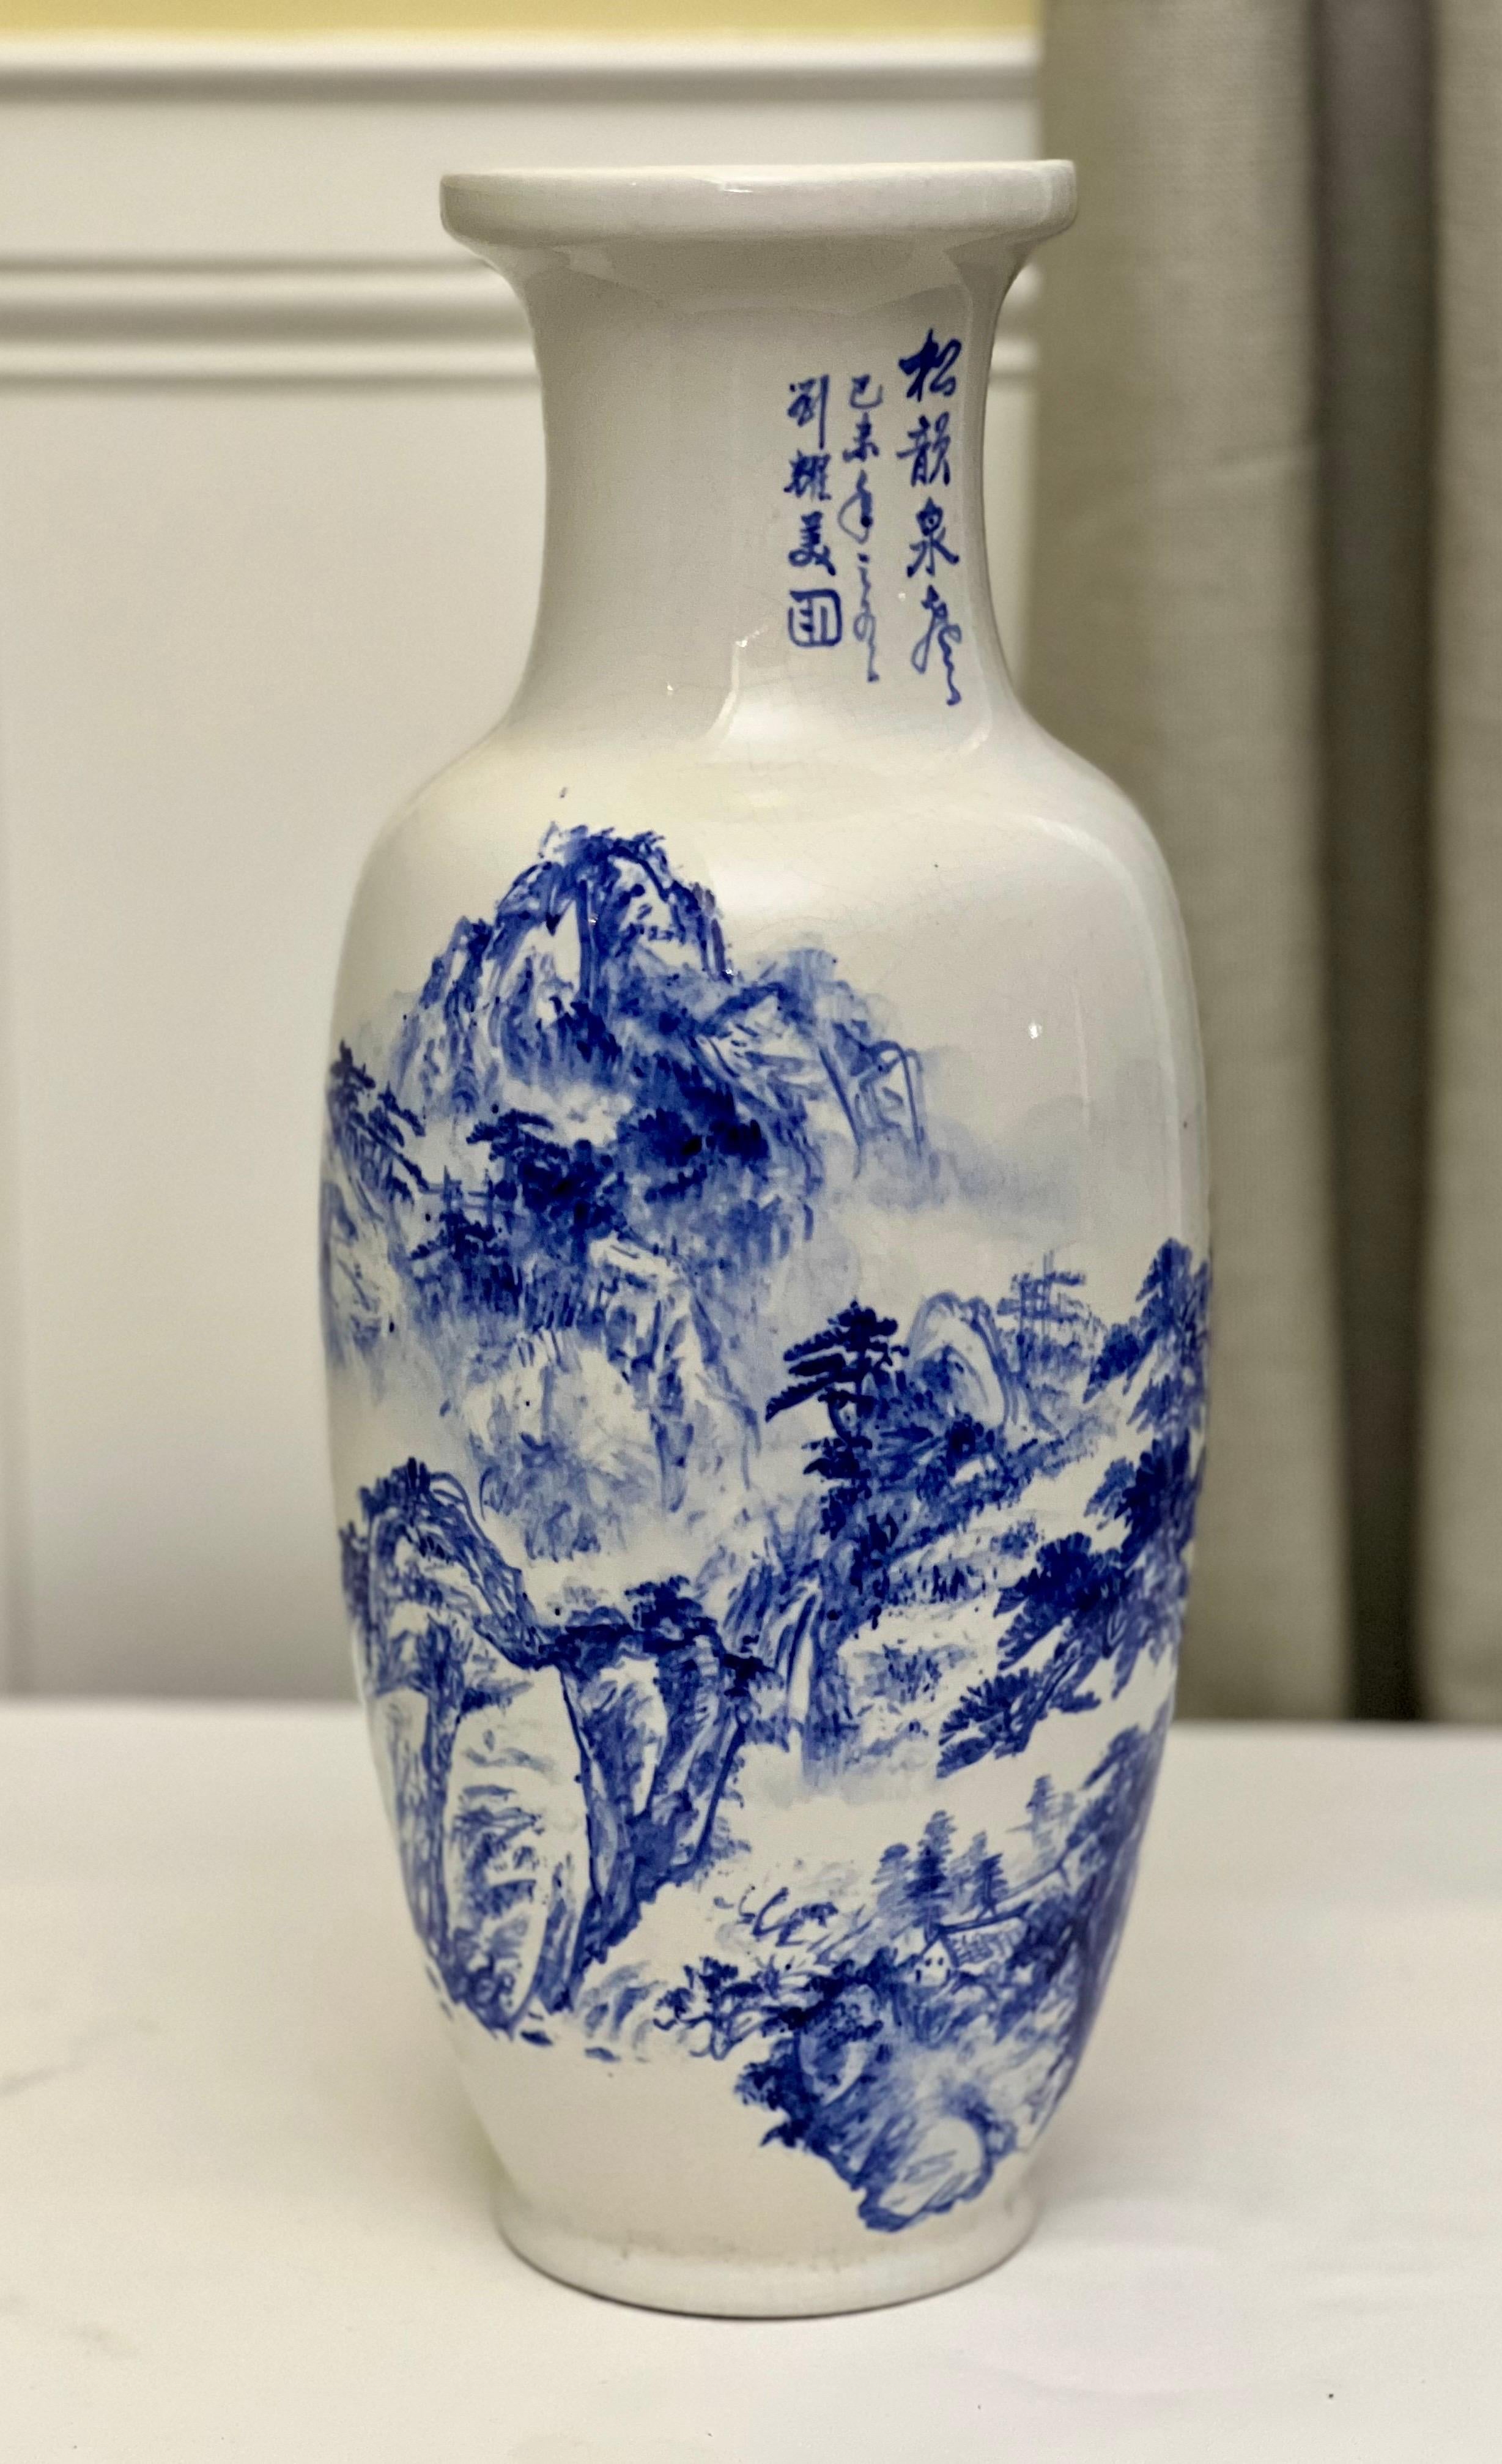 Blaue und weiße balusterförmige Porzellanvase mit Zhongfeng-Marke auf dem Sockel, ca. 1960er Jahre.

Wunderschöne Vase mit einer weitläufigen Gebirgsszene und einzigartiger Kalligrafie-Schrift. Auf dem Hals befindet sich ein einzigartiges